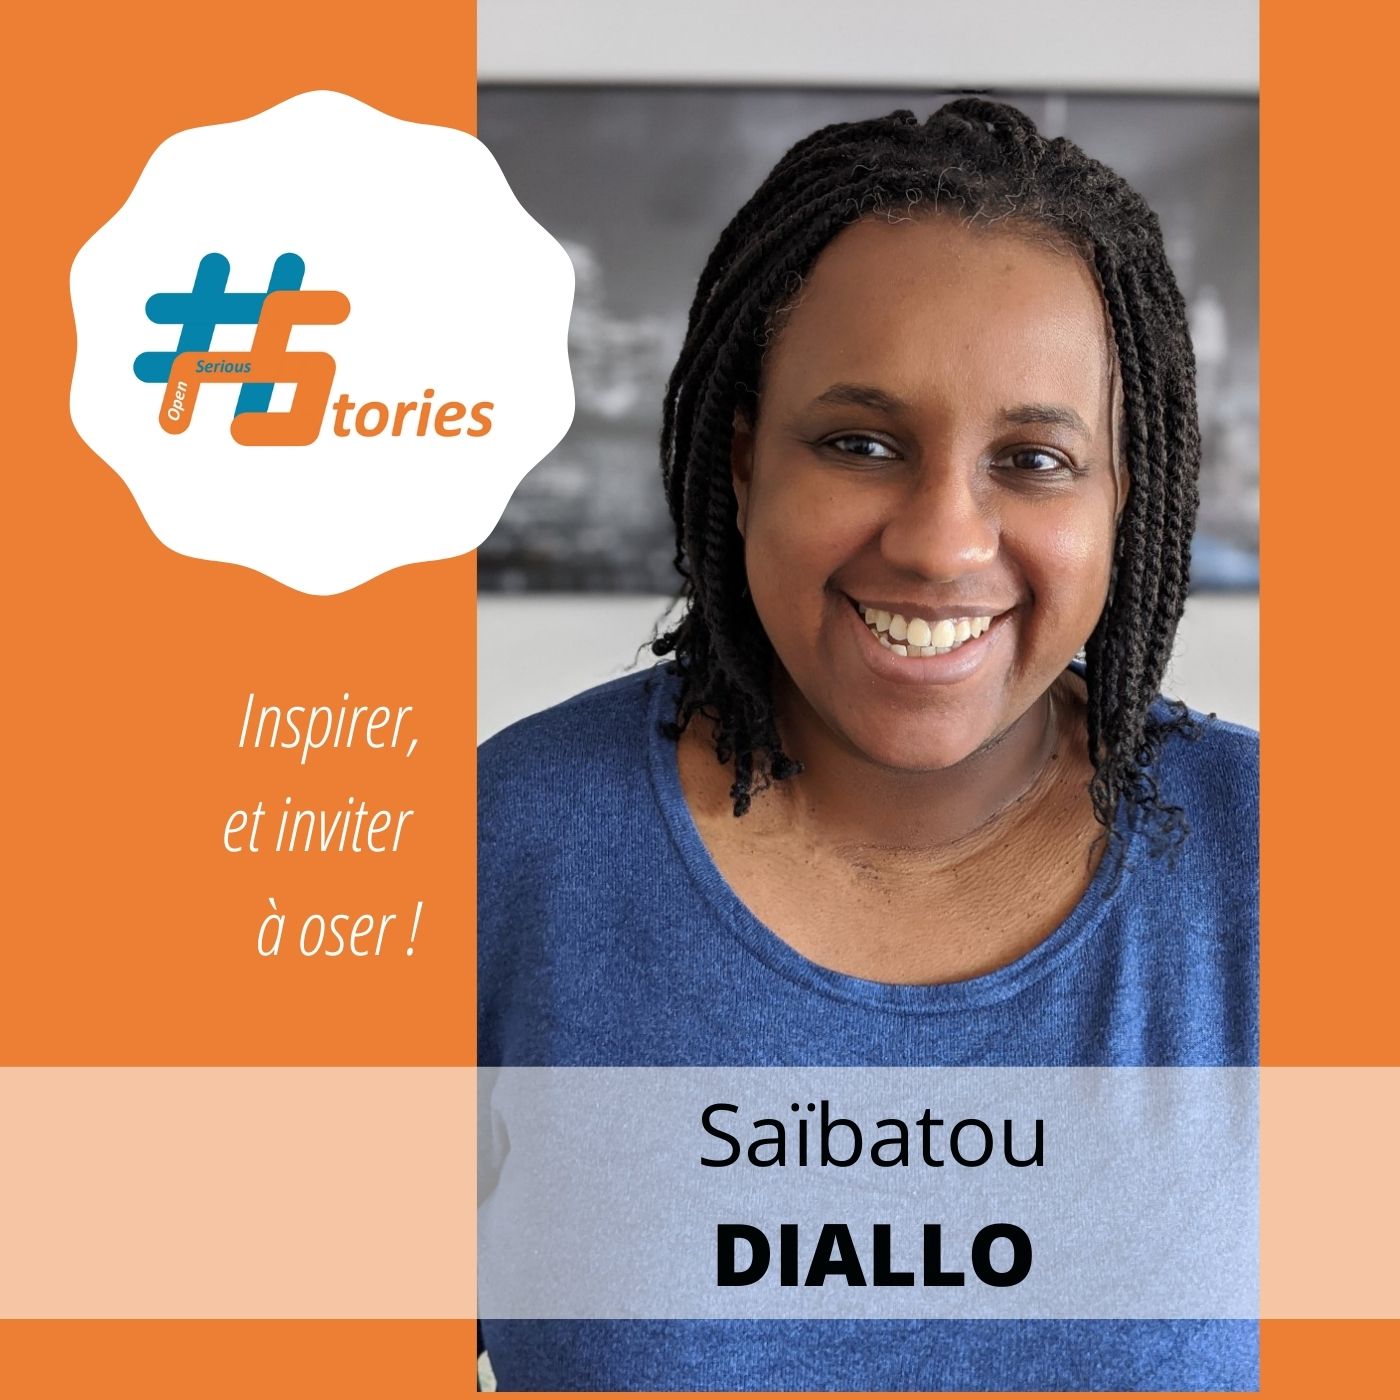 Le retour d’expérience d’une joueuse : Saibatou Diallo [Podcast – 15min]